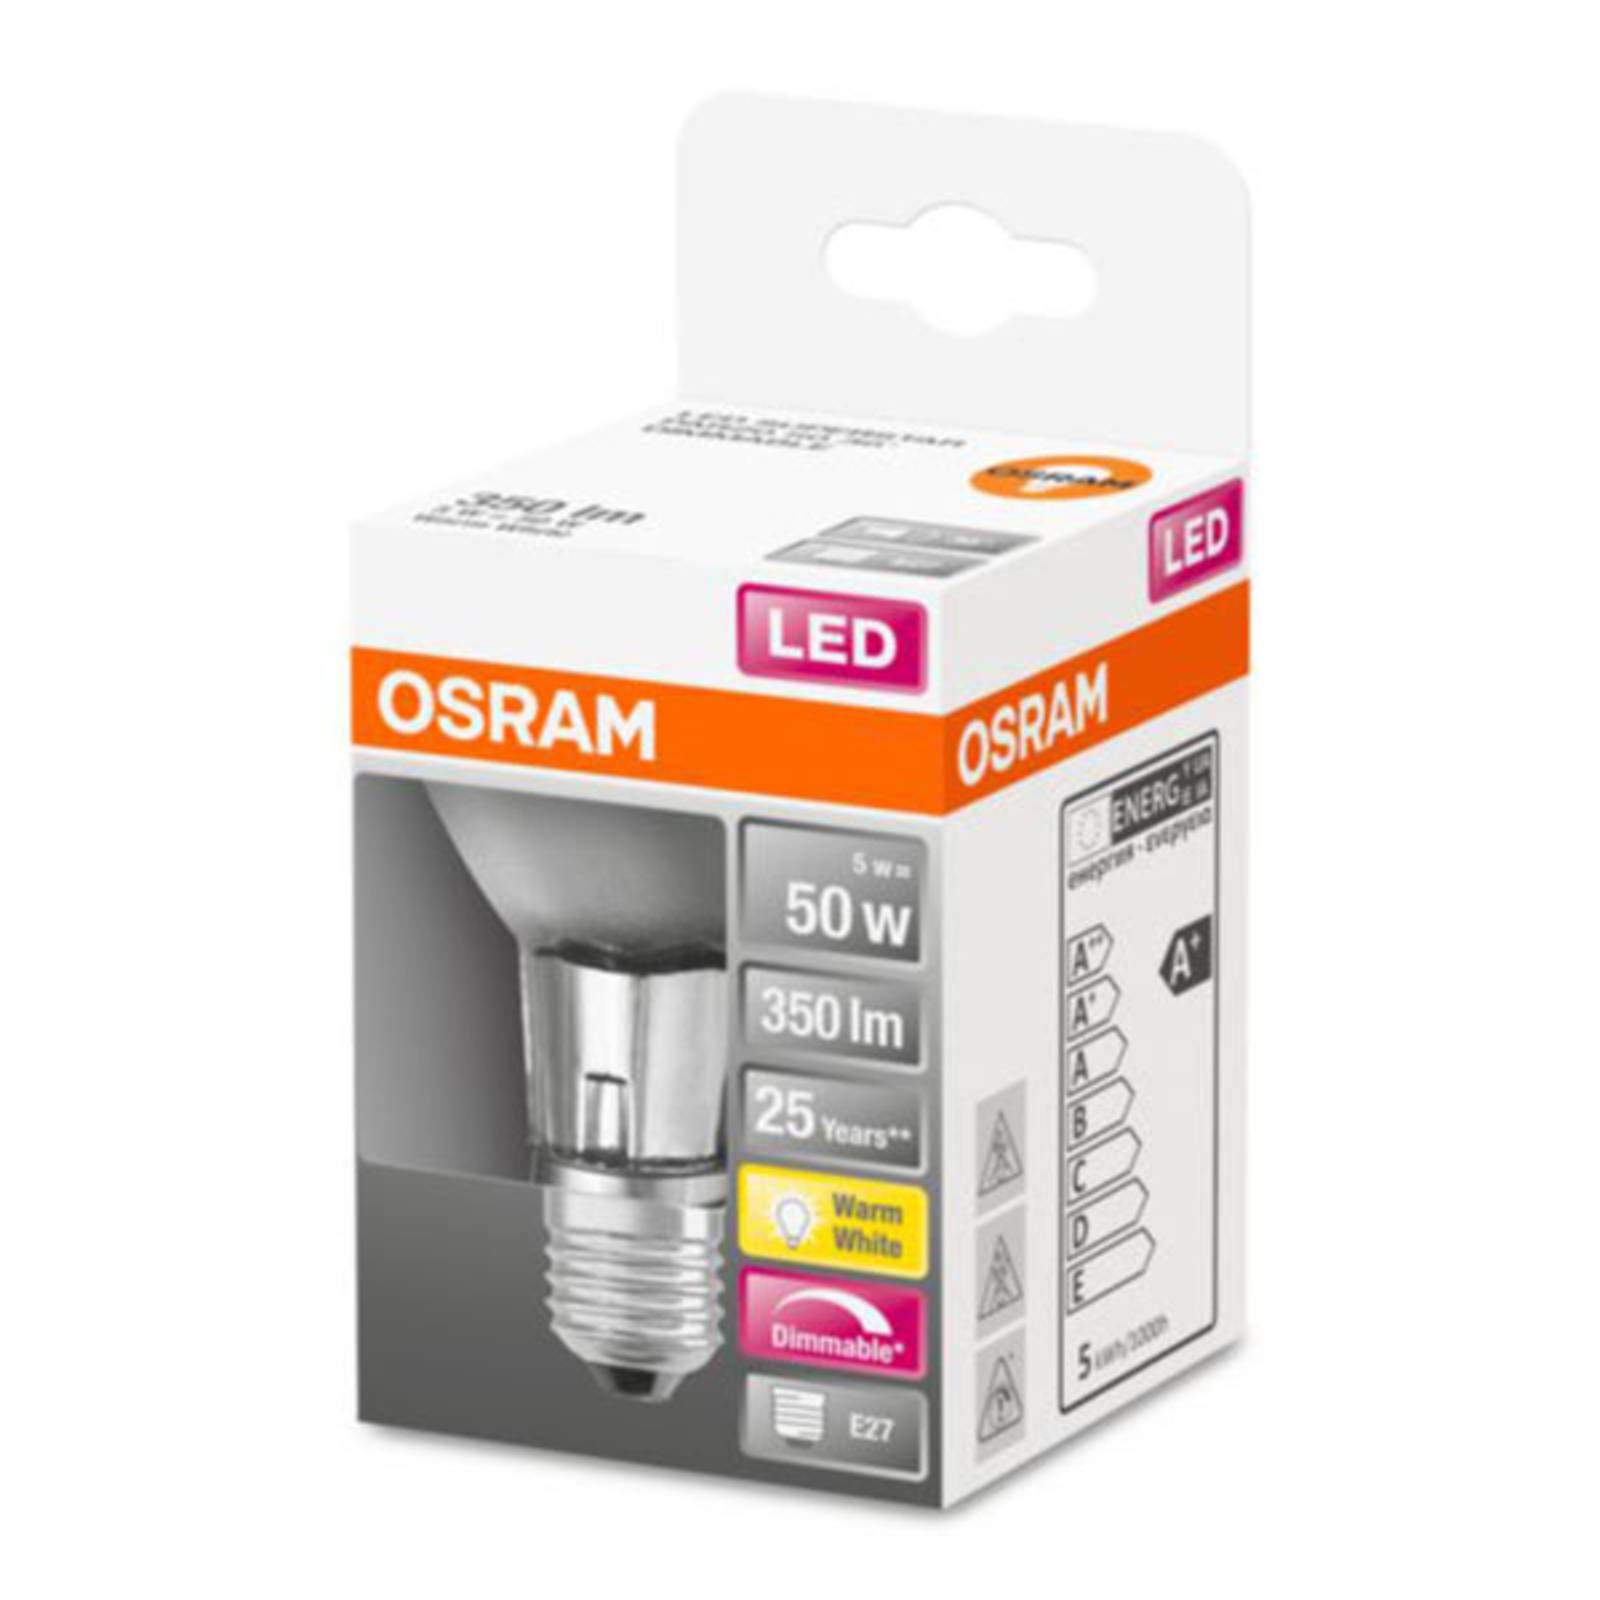 OSRAM LED-lampa E27 6,4 W PAR20 2 700 K dimbar